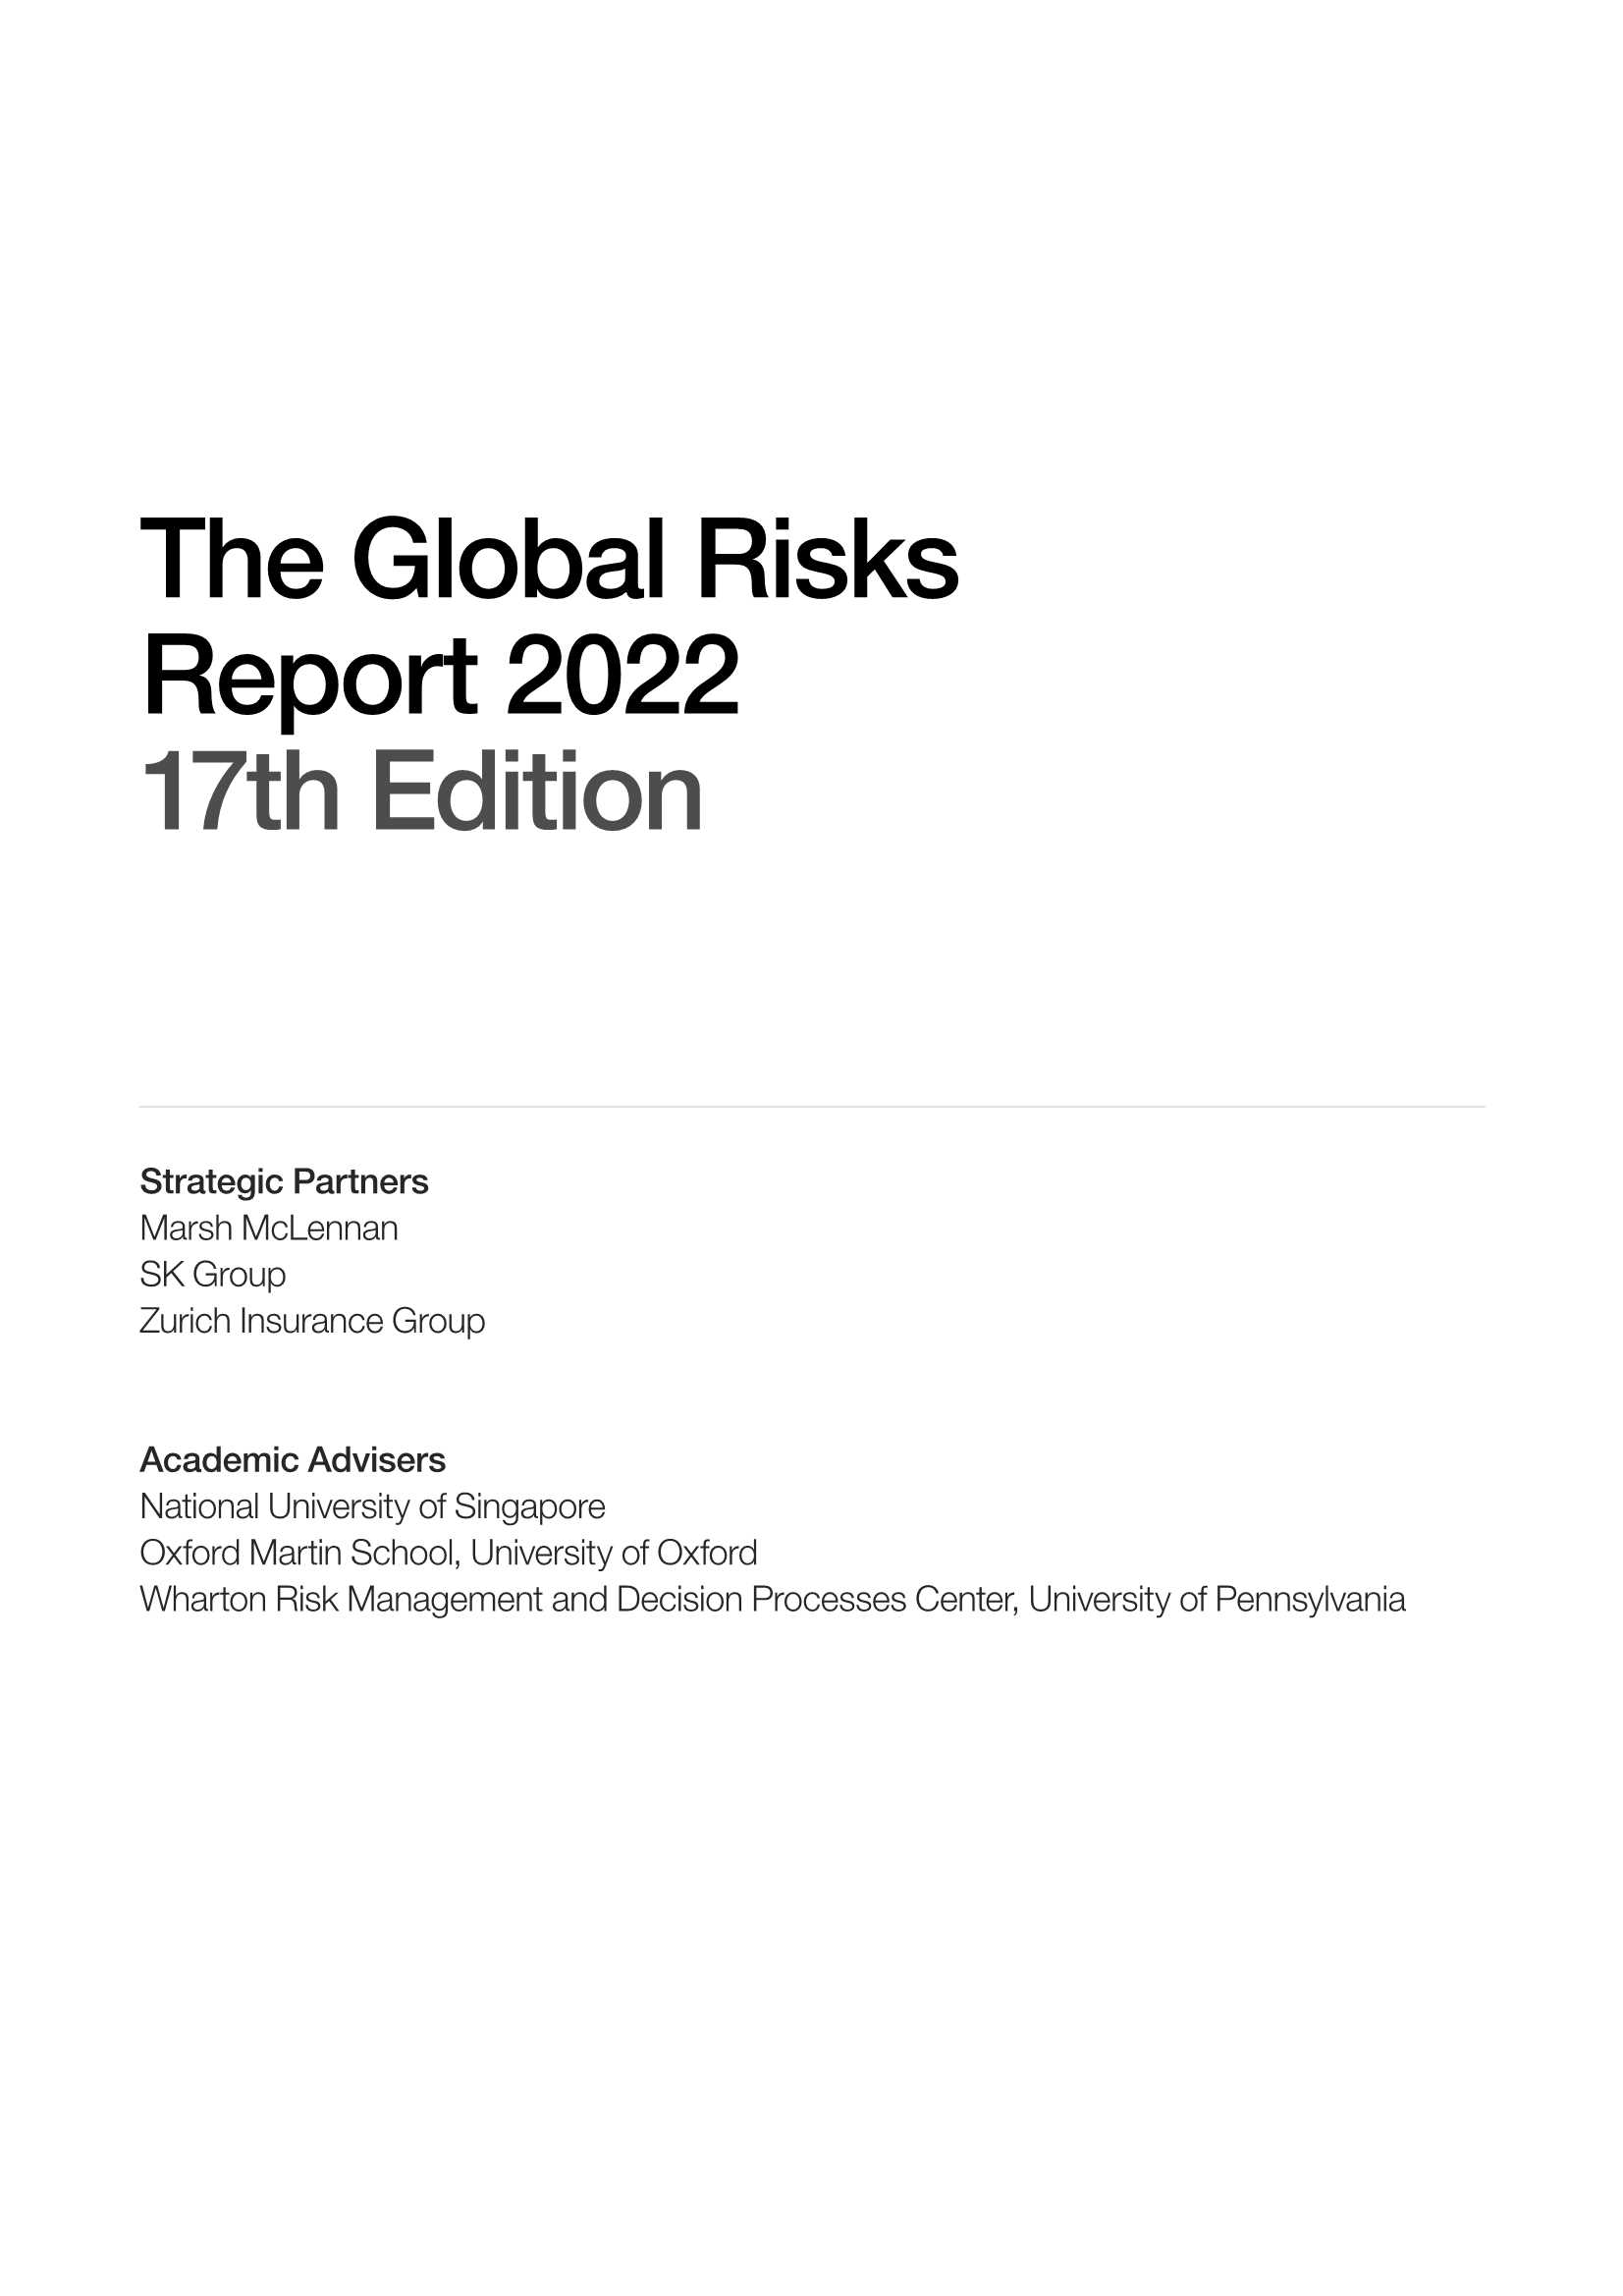 WEF-2022年全球风险报告-2022.01-117页